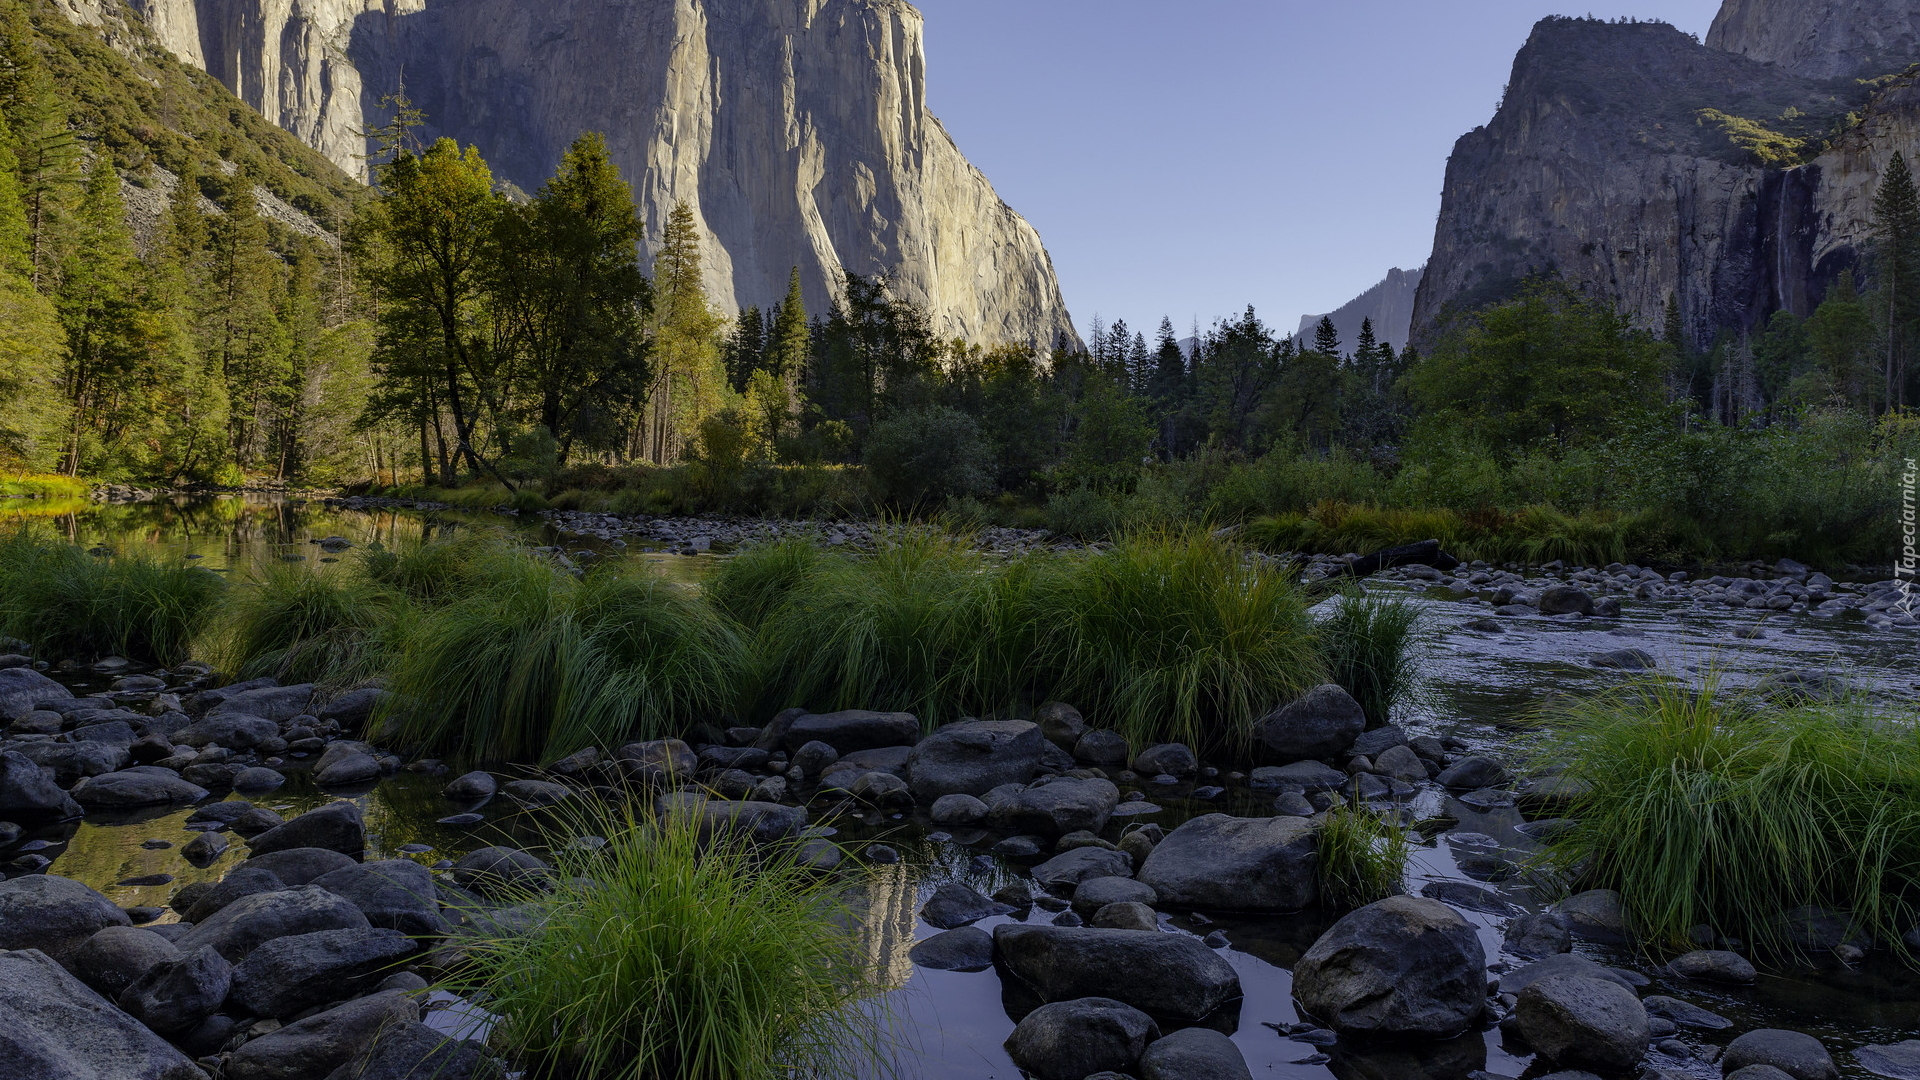 Park Narodowy Yosemite, Góry Sierra Nevada, Rzeka, Merced River, Dolina, Yosemite Valley, Kępki, Trawy, Kamienie, Drzewa, Kalifornia, Stany Zjednoczone